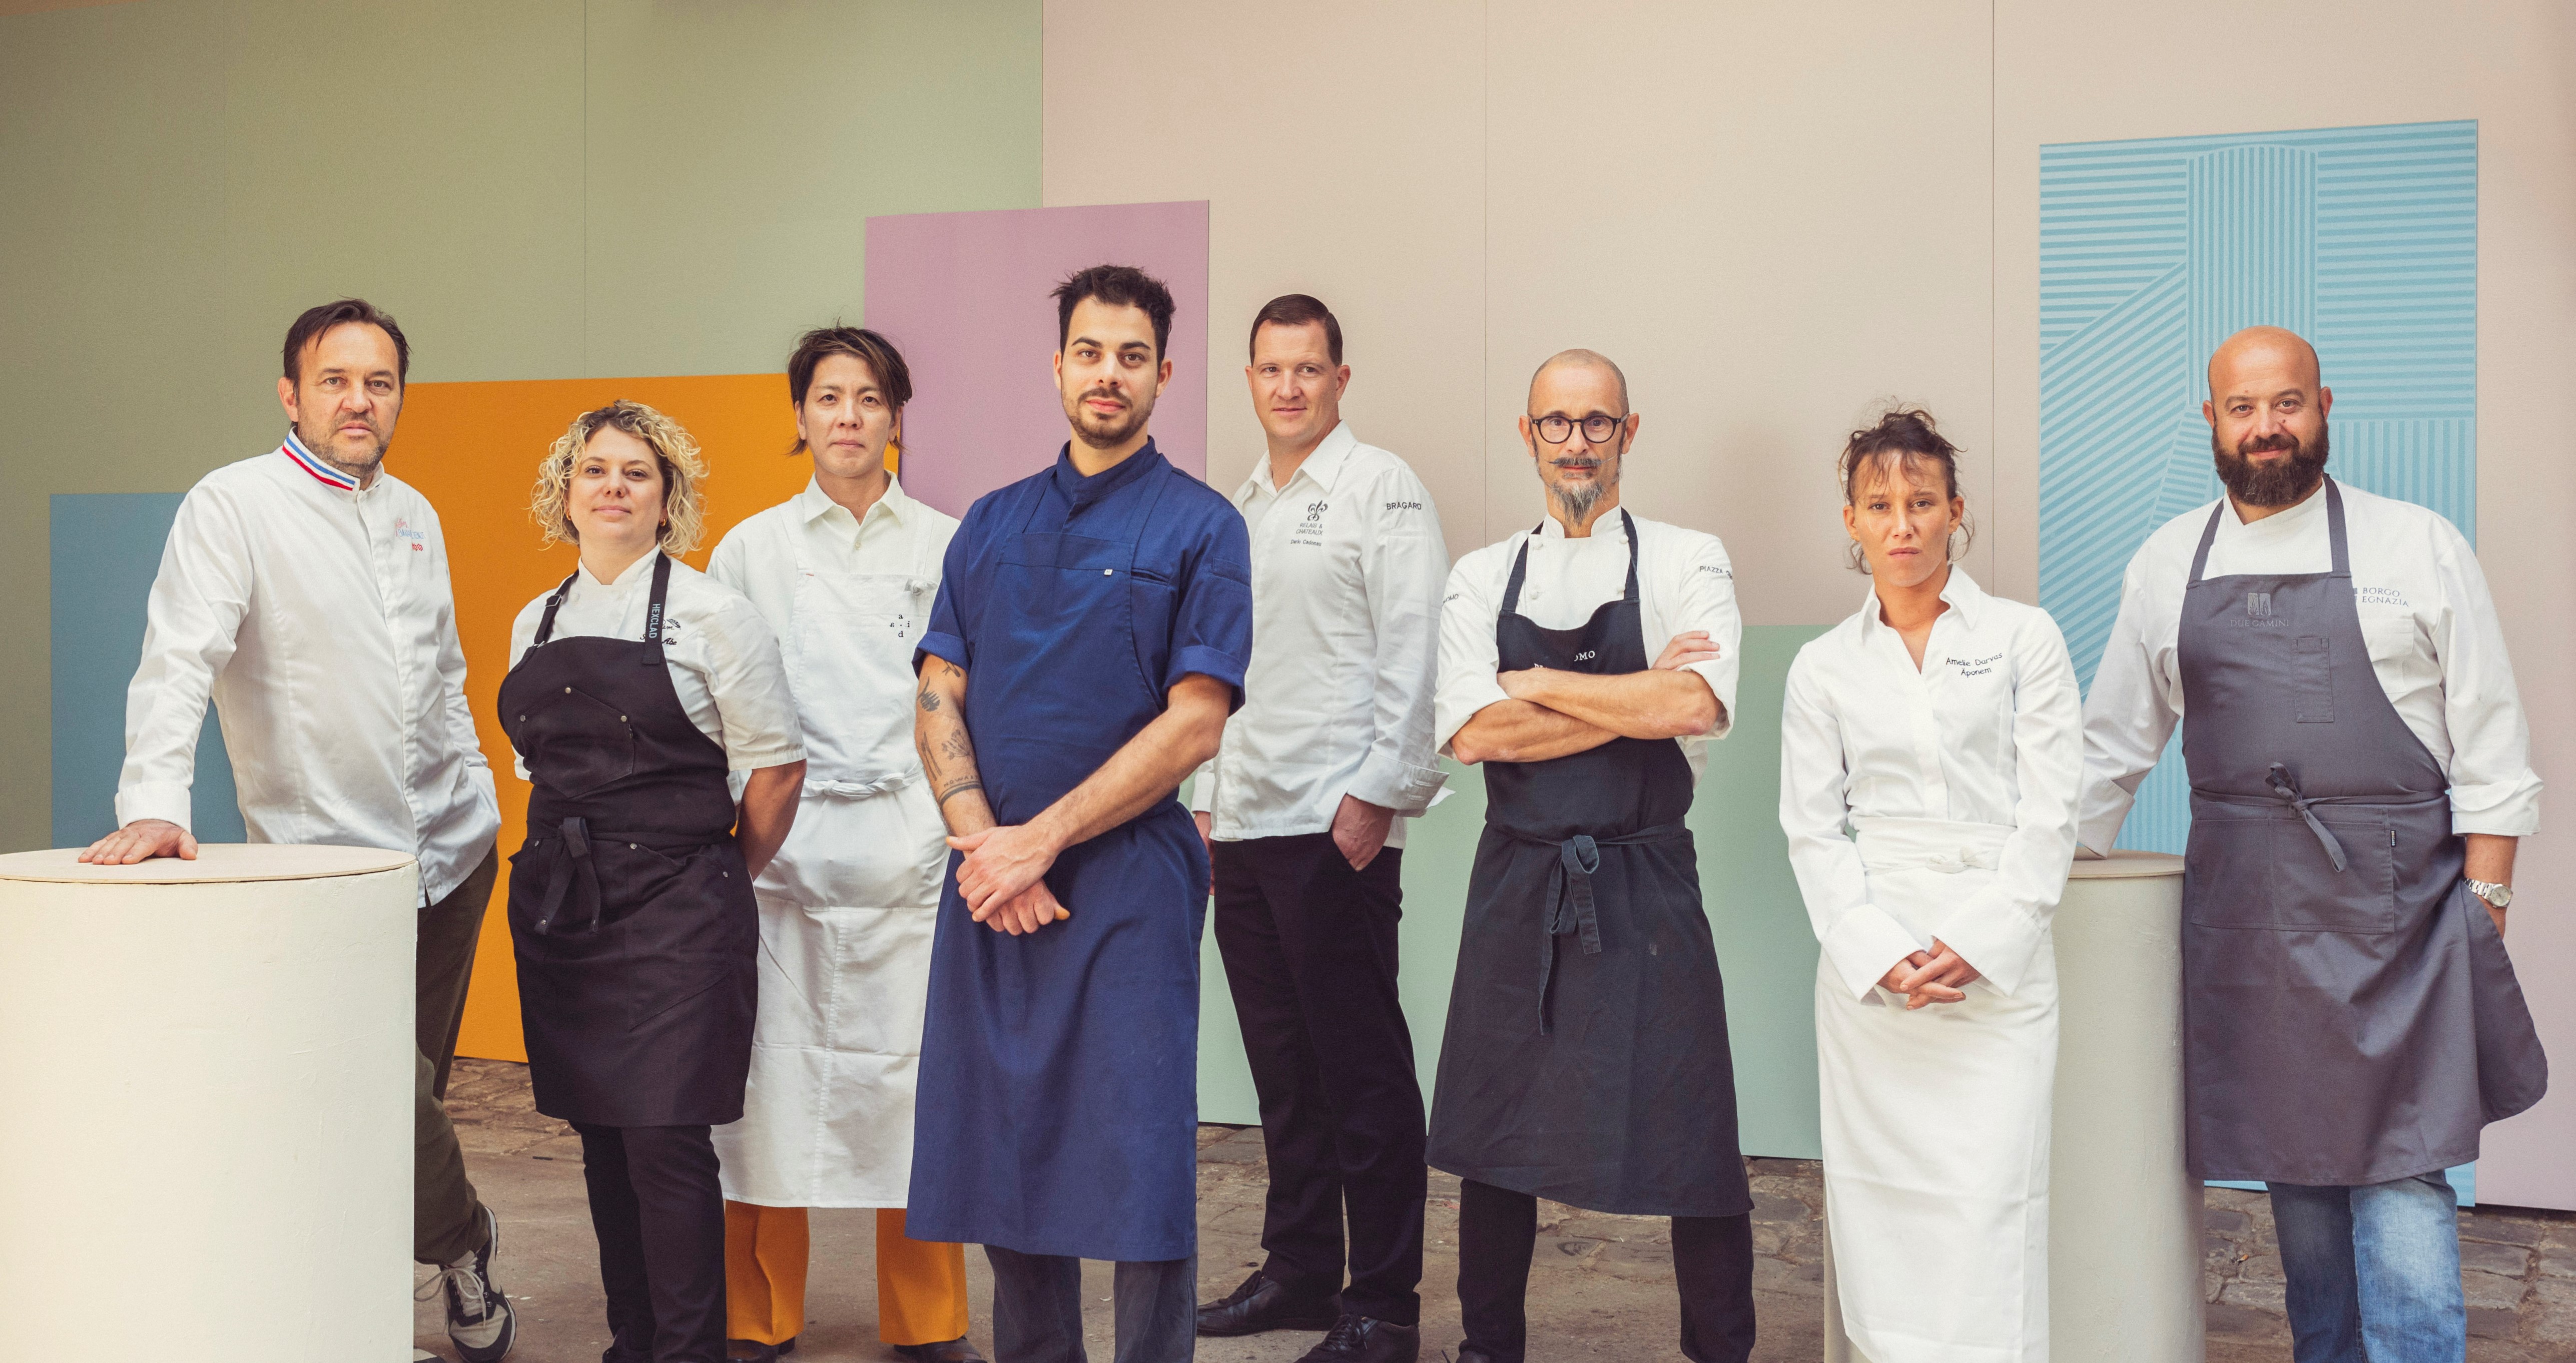 Veuve Clicquot La Grande Dame 2015, Garden Gastronomy - The Chefs